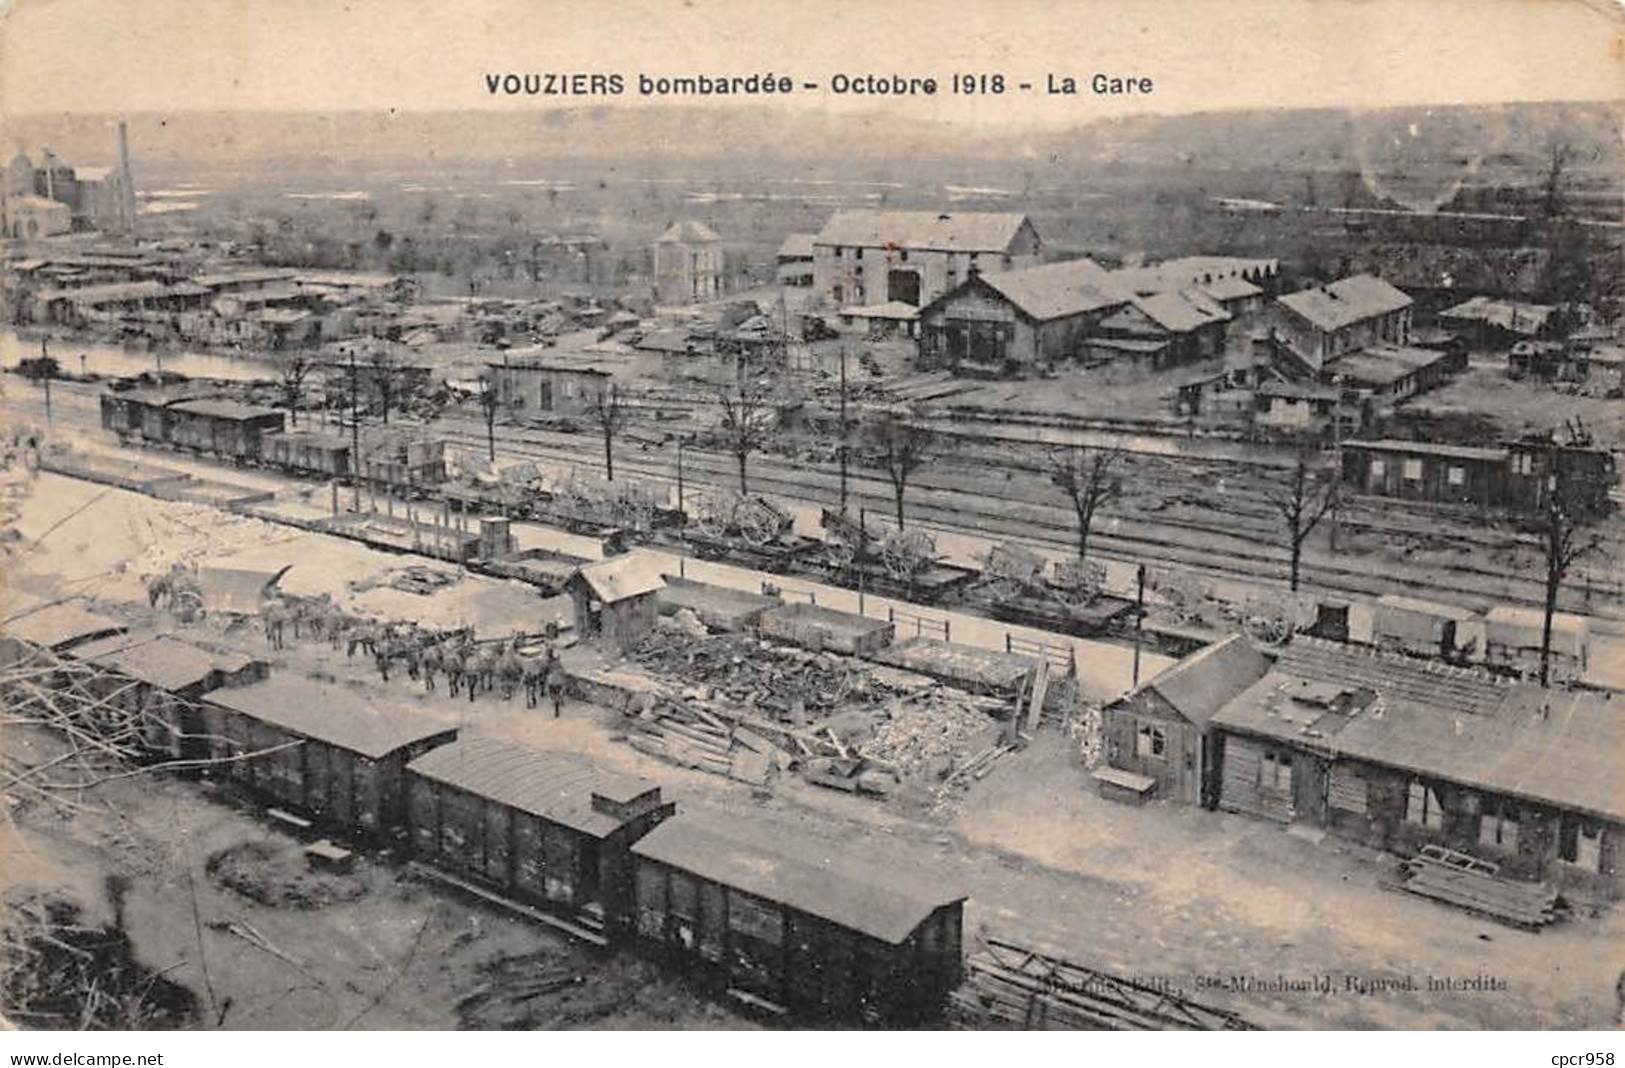 08 - VOUZIERS - SAN56685 - Vouziers Bombardées - Octobre 1918 - La Gare - Etat - Train - Vouziers